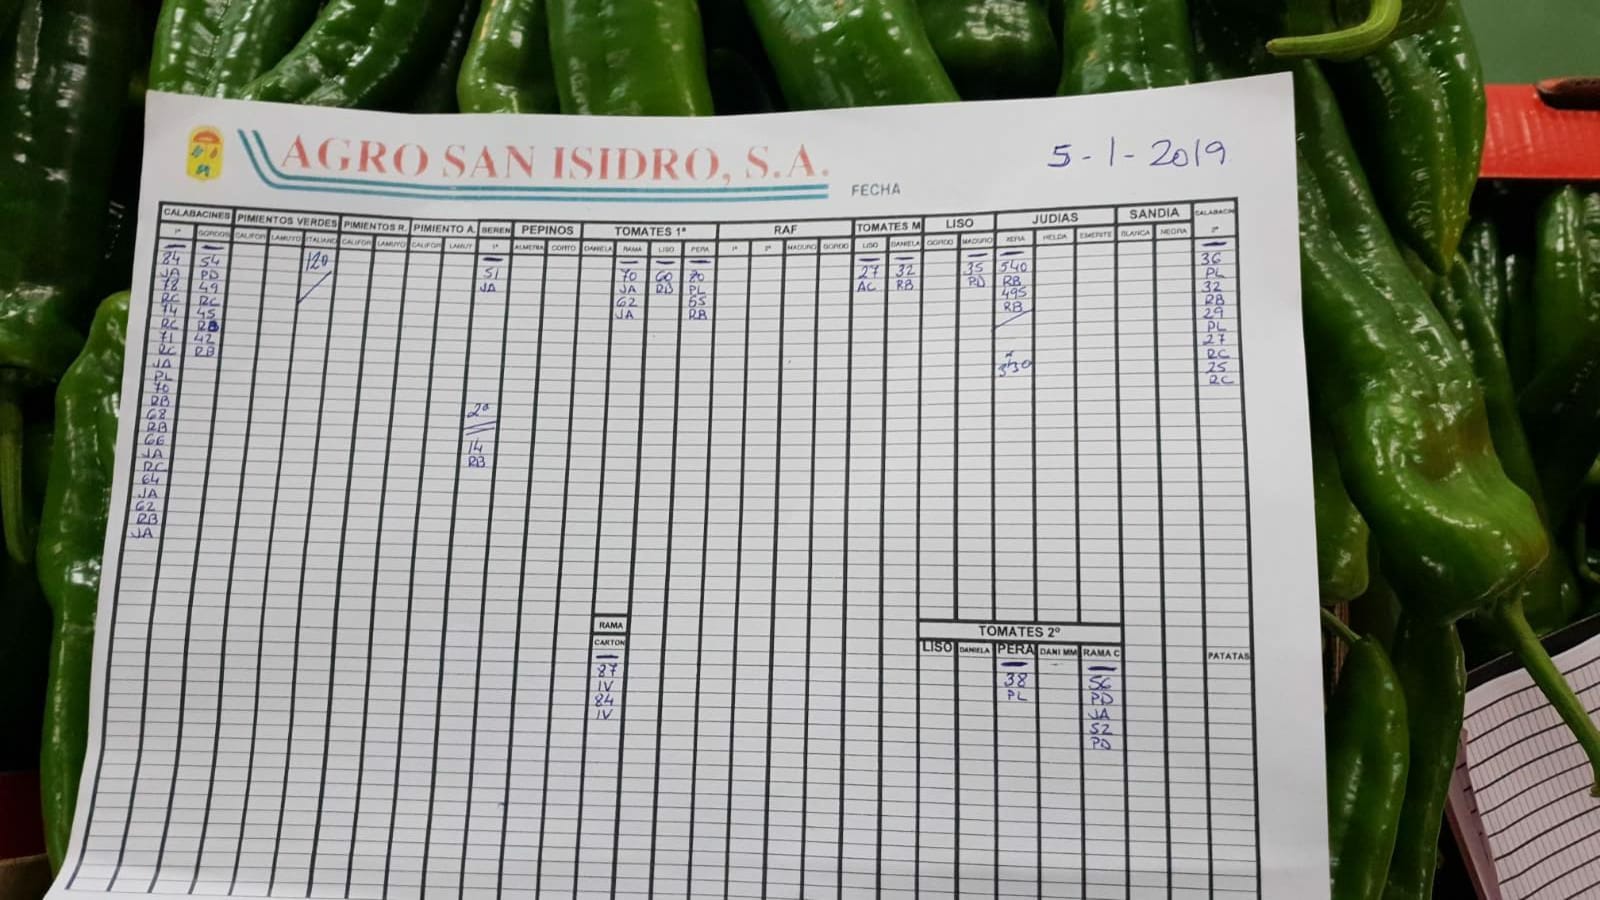 Subasta hortofrutícola Agro San Isidro 5 de Febrero 2019